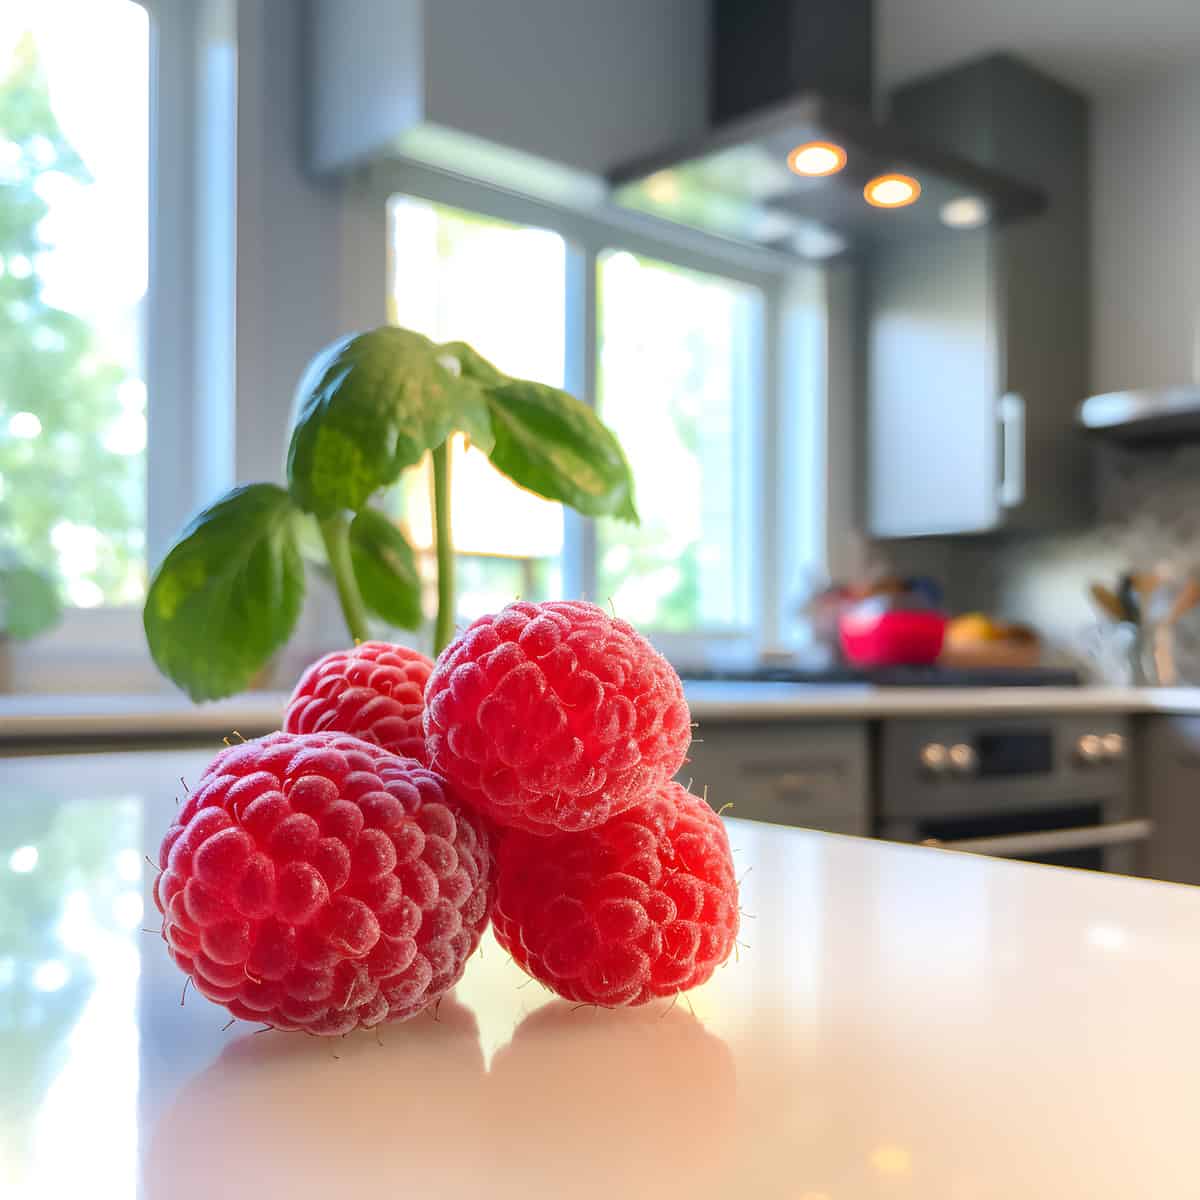 Mysore Raspberry on a kitchen counter